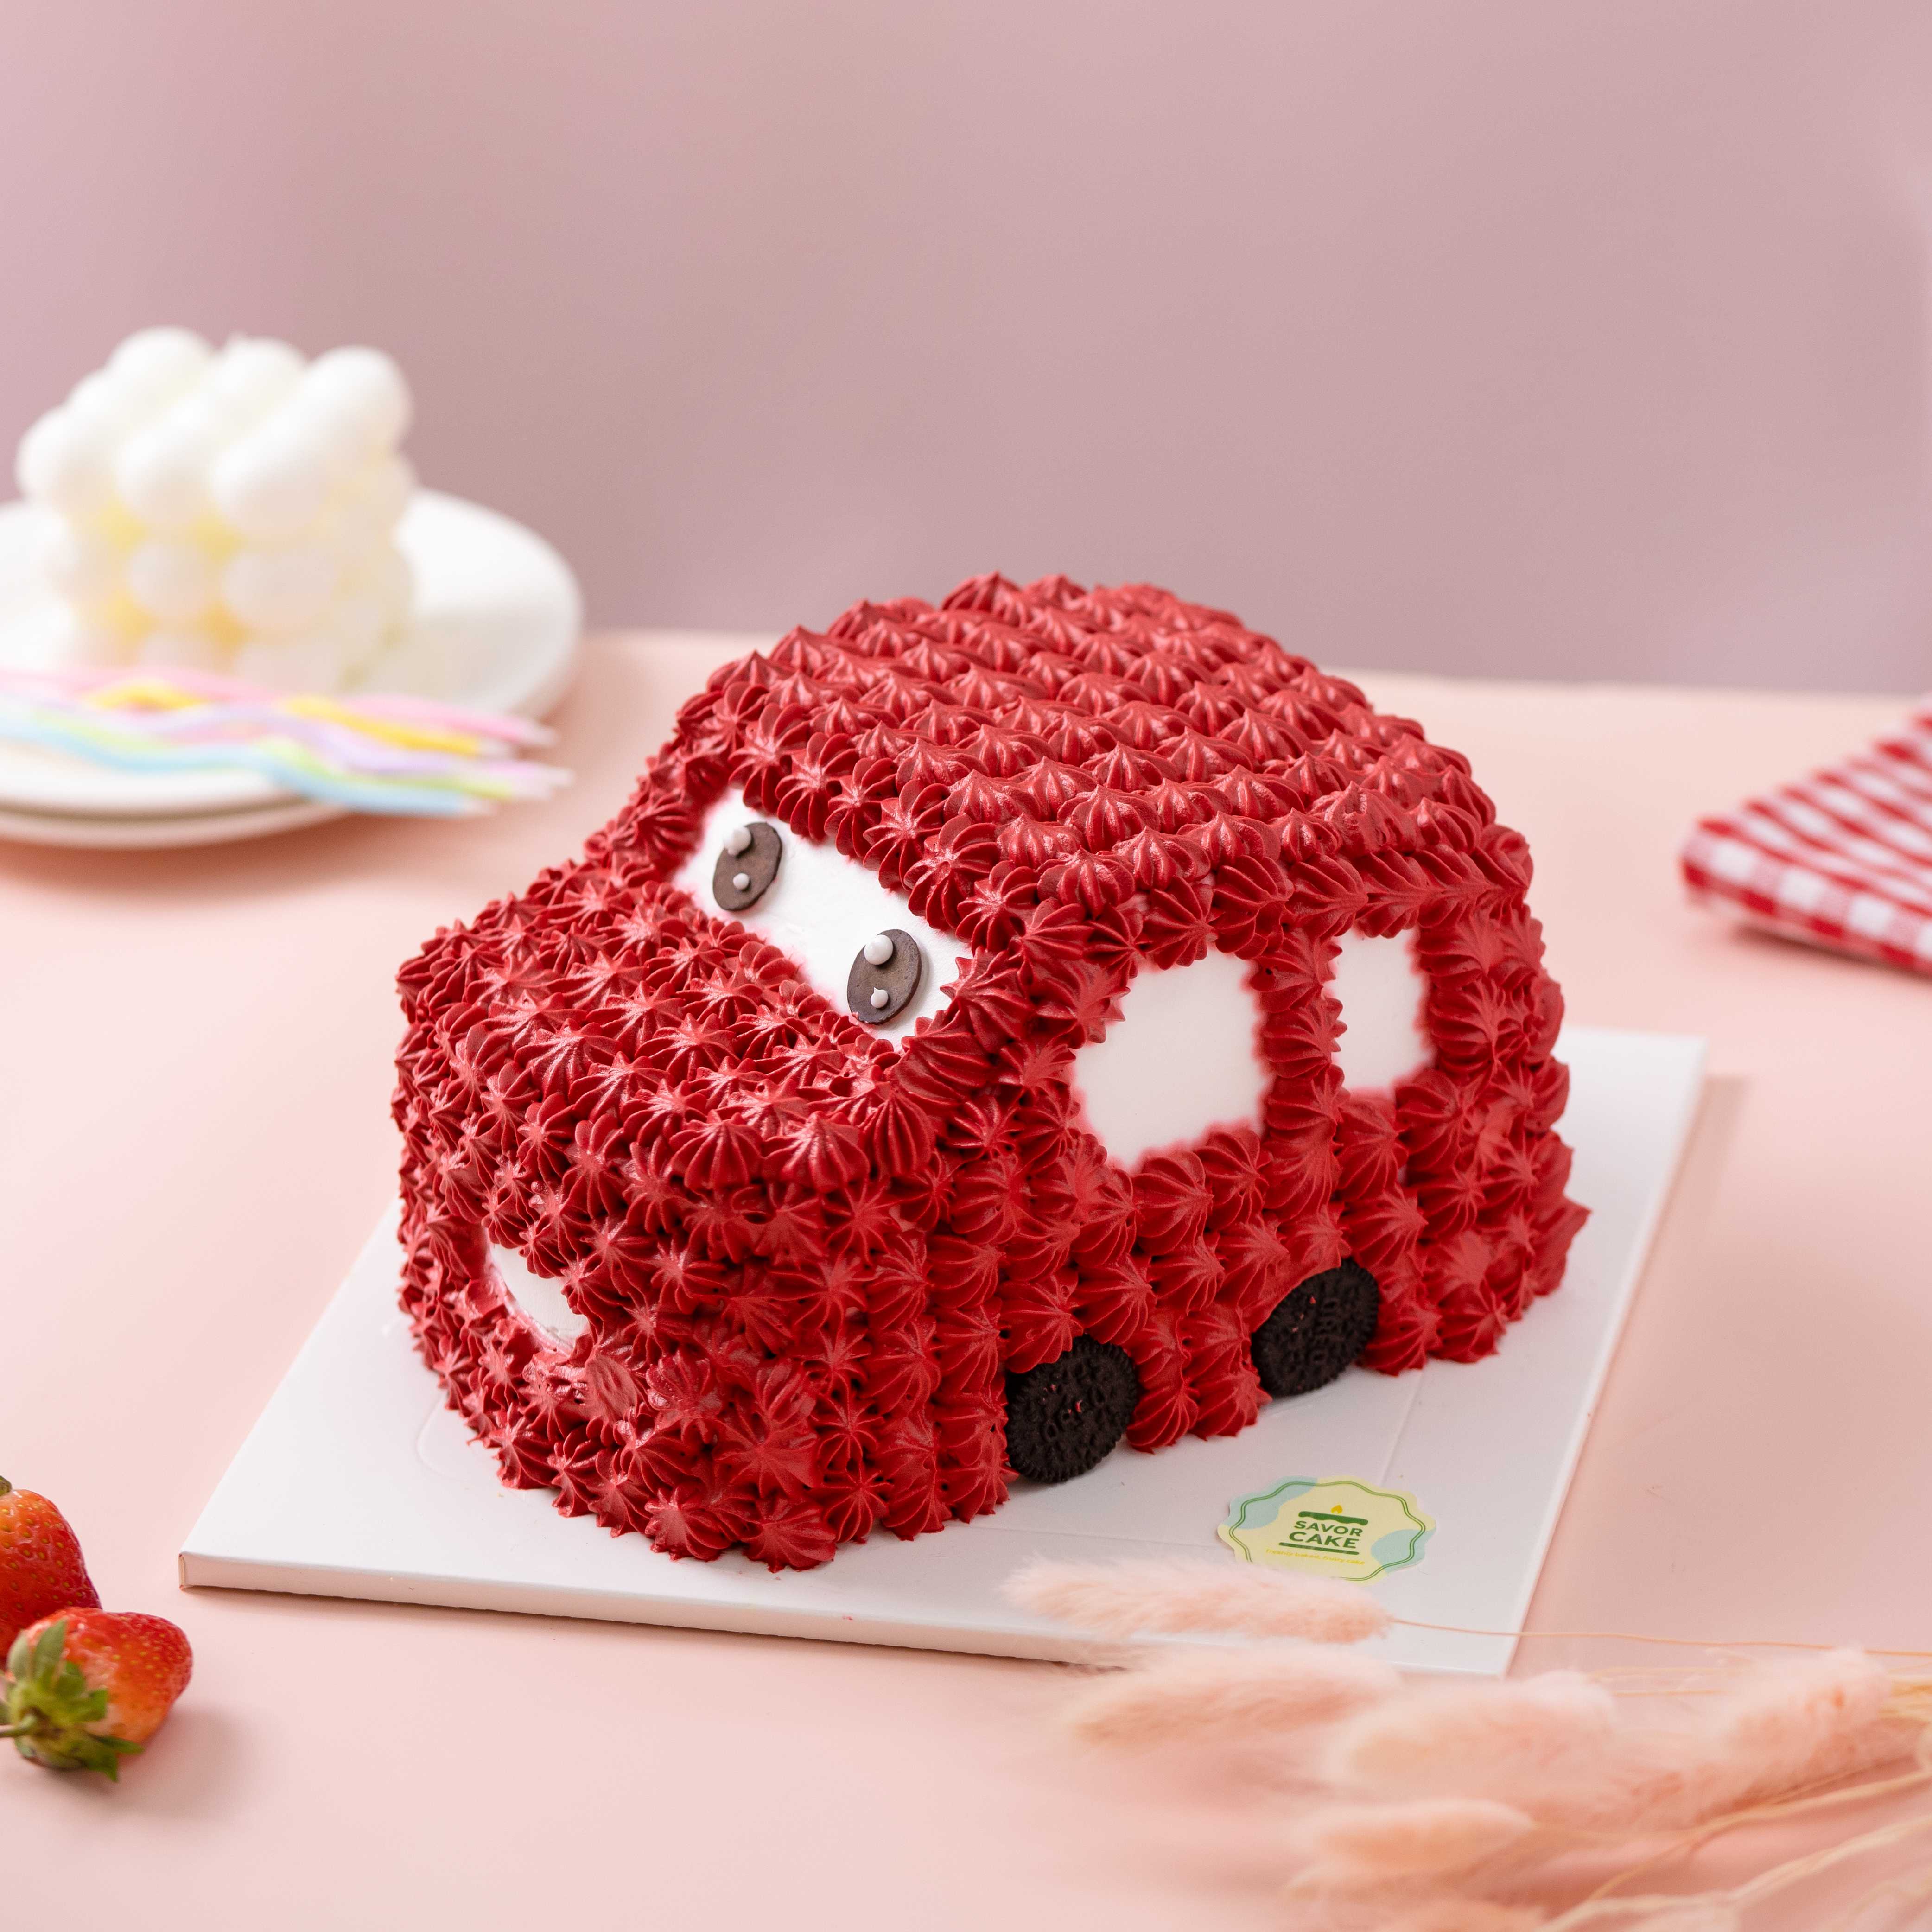 Bánh kem Red Car